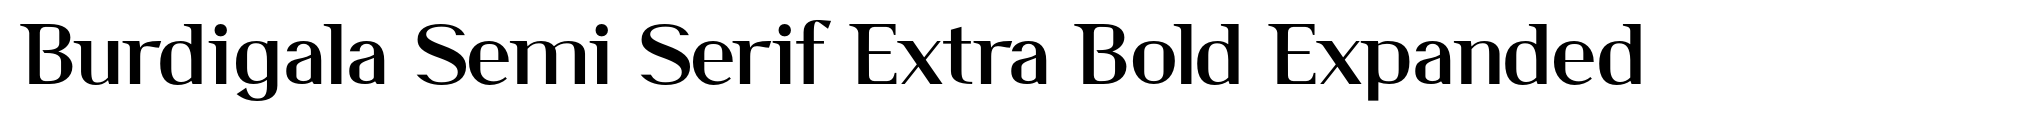 Burdigala Semi Serif Extra Bold Expanded image